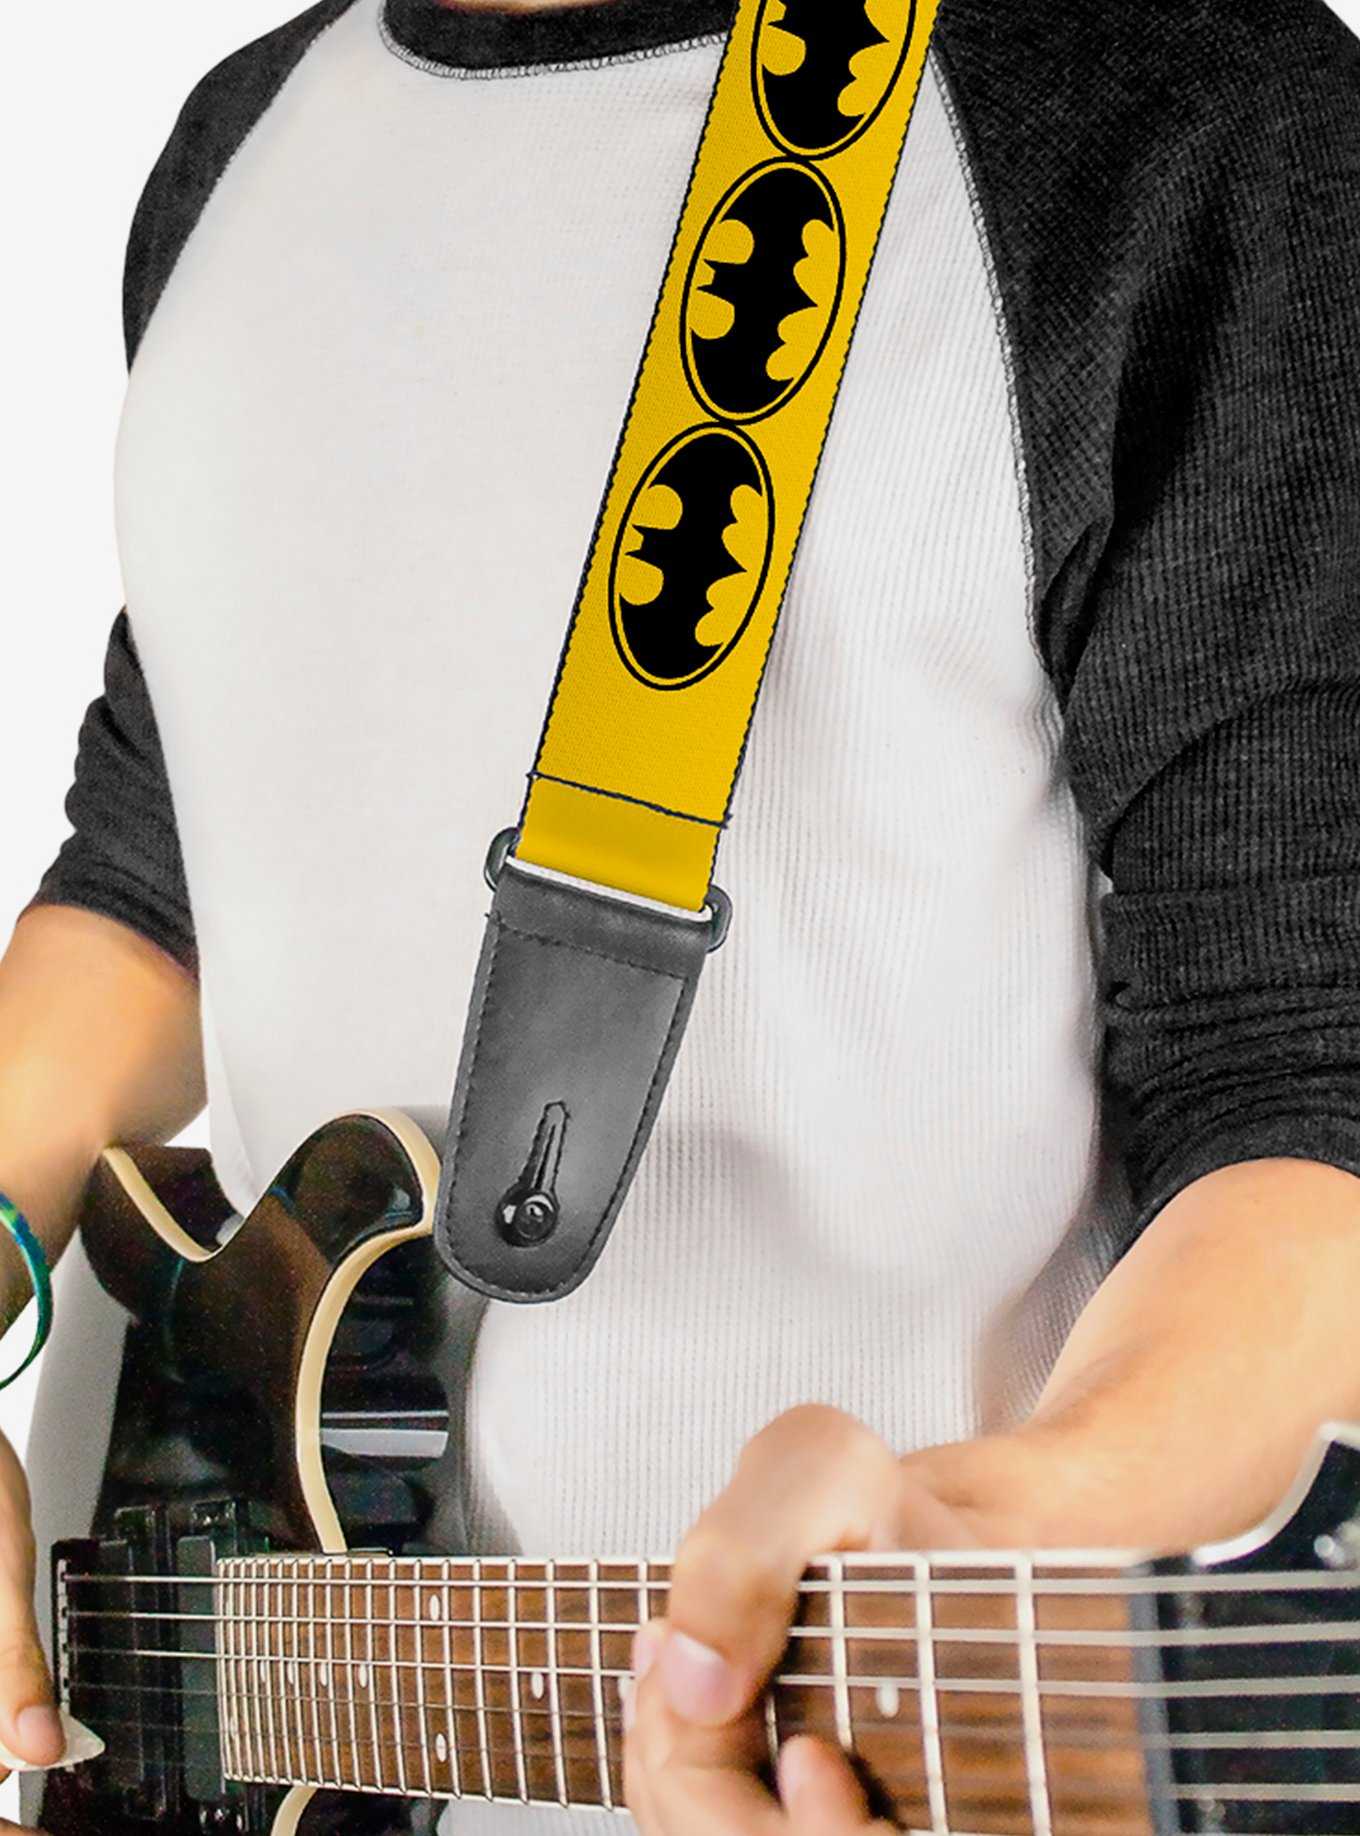 DC Comics Batman Bat Signals Yellow Black Guitar Strap, , hi-res